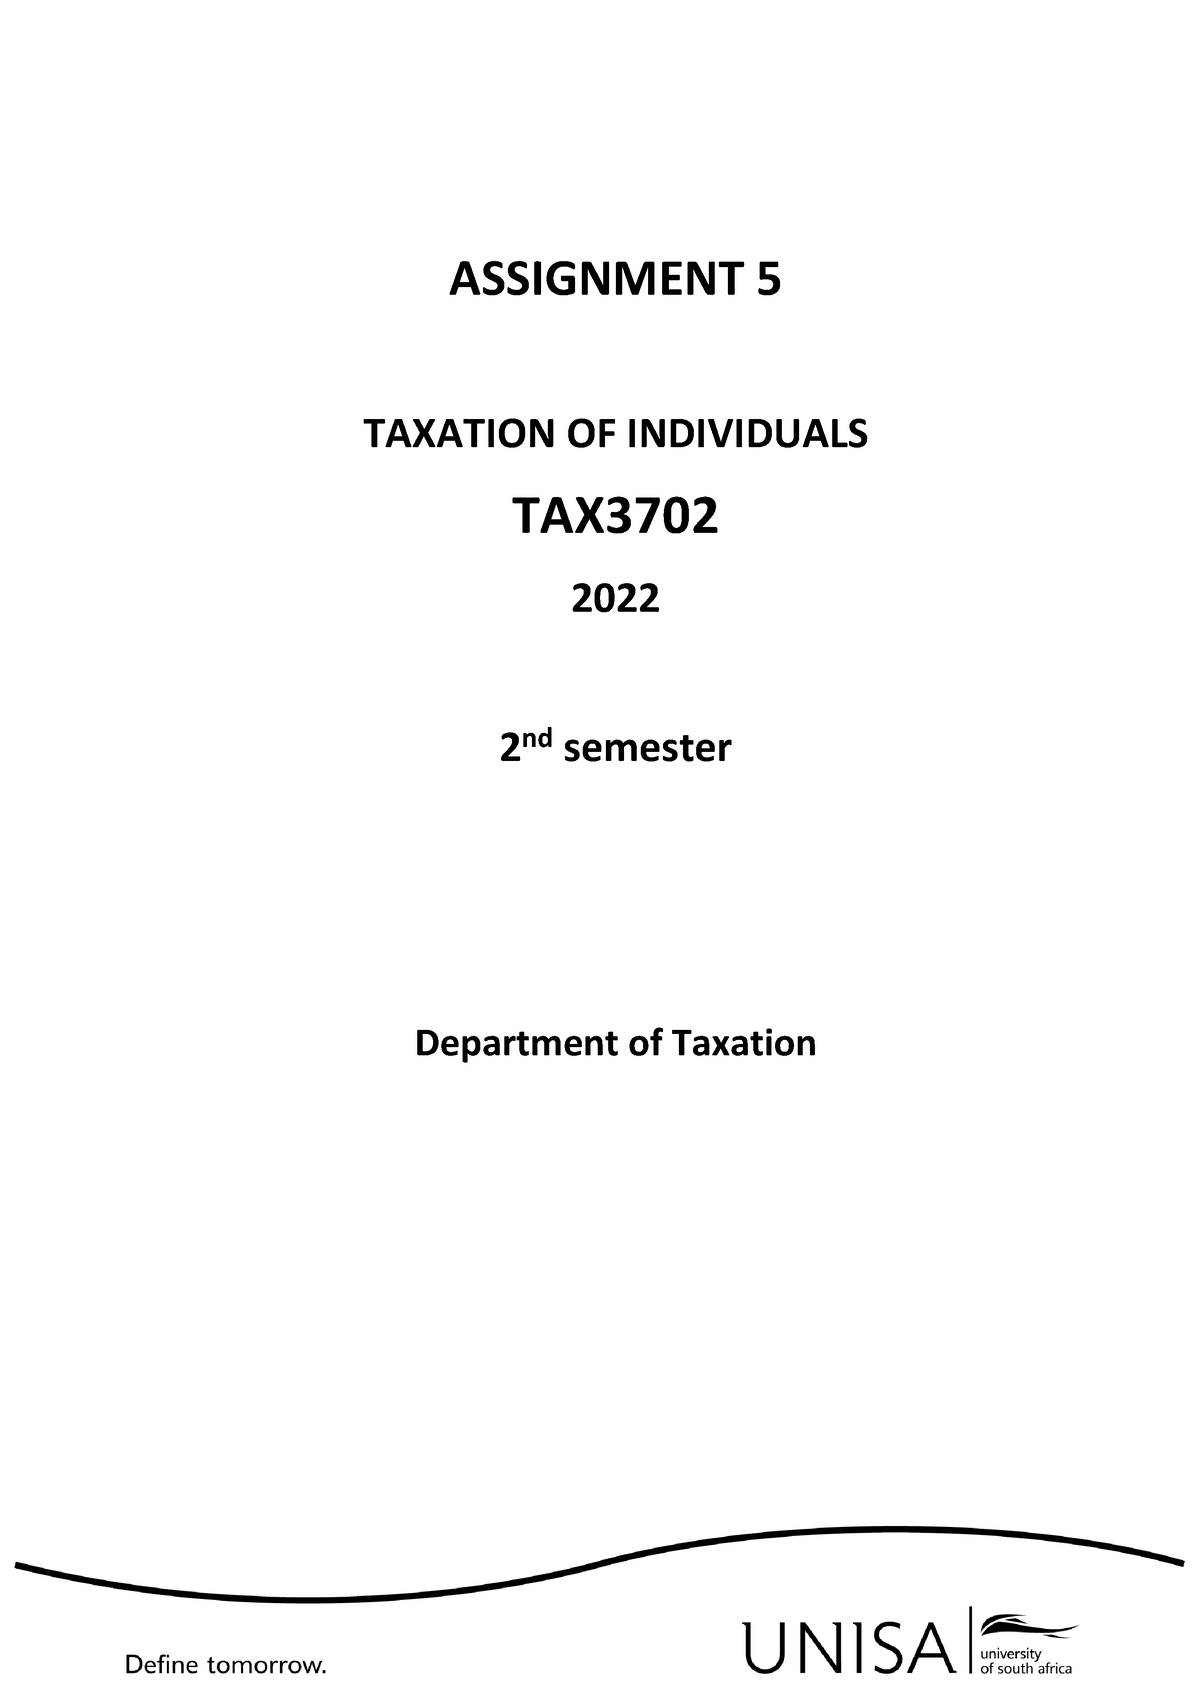 tax3702 assignment 5 semester 2 2022